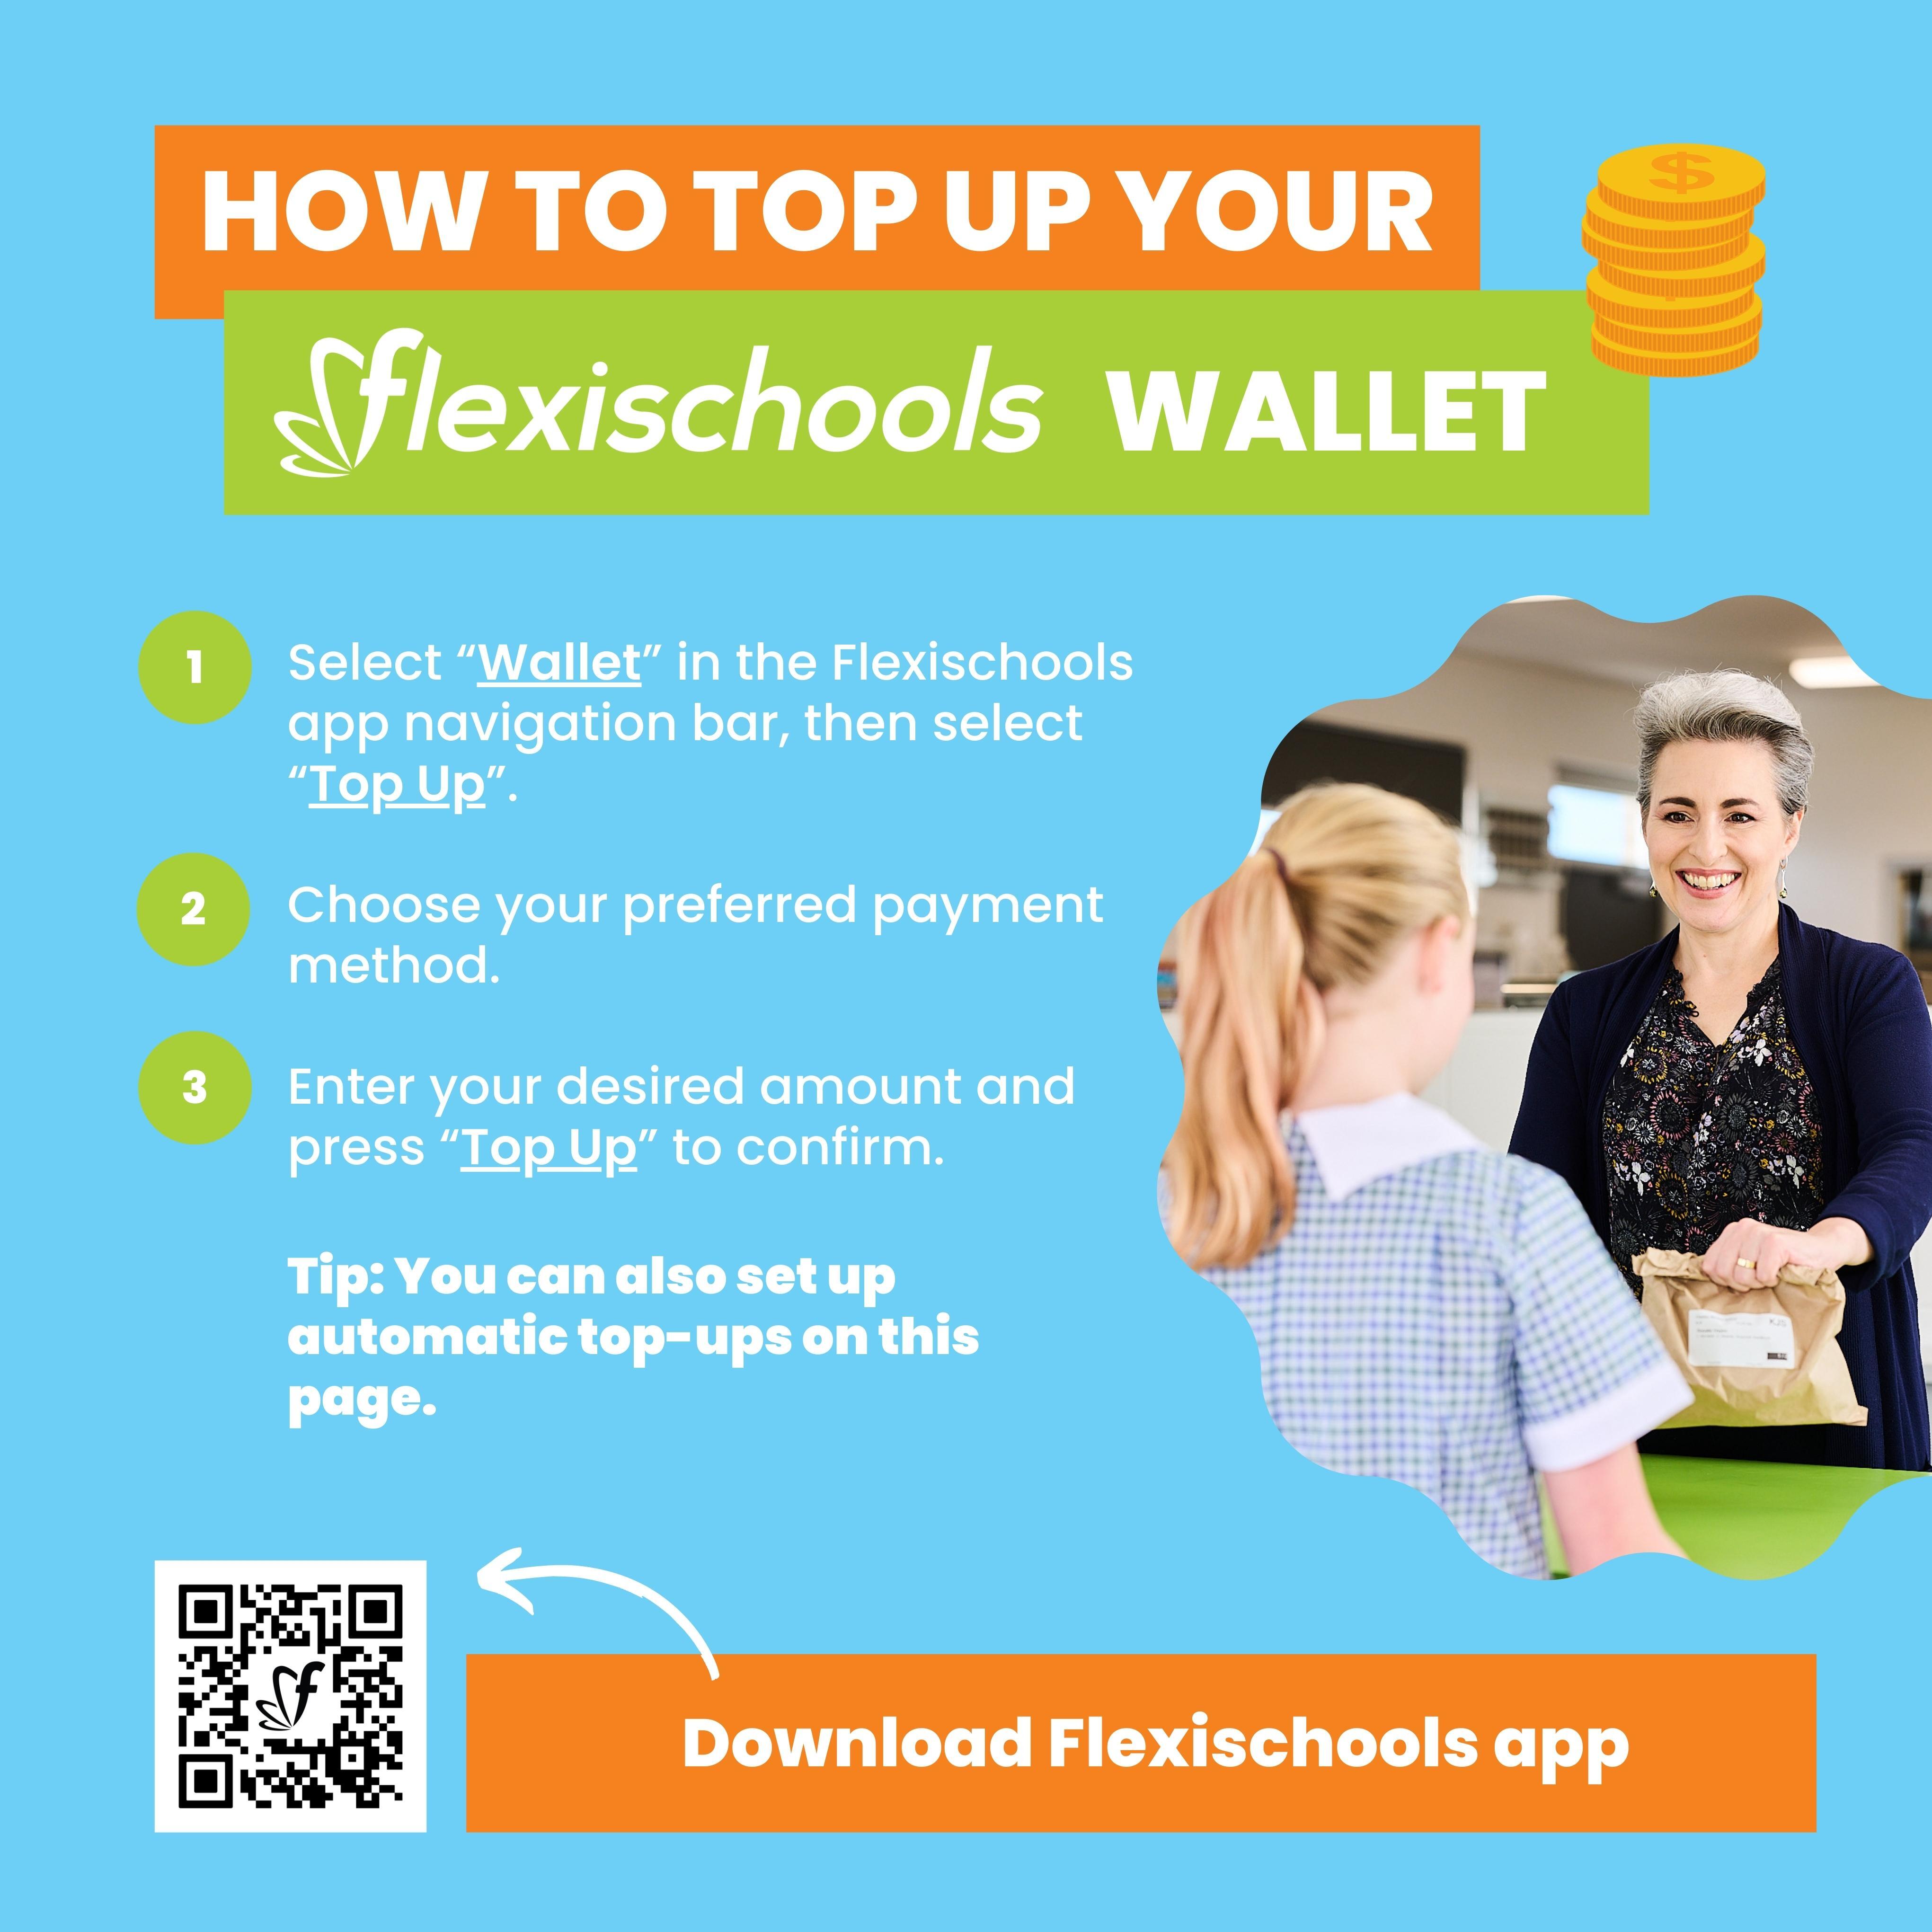 Flexischools - How to top up your wallet